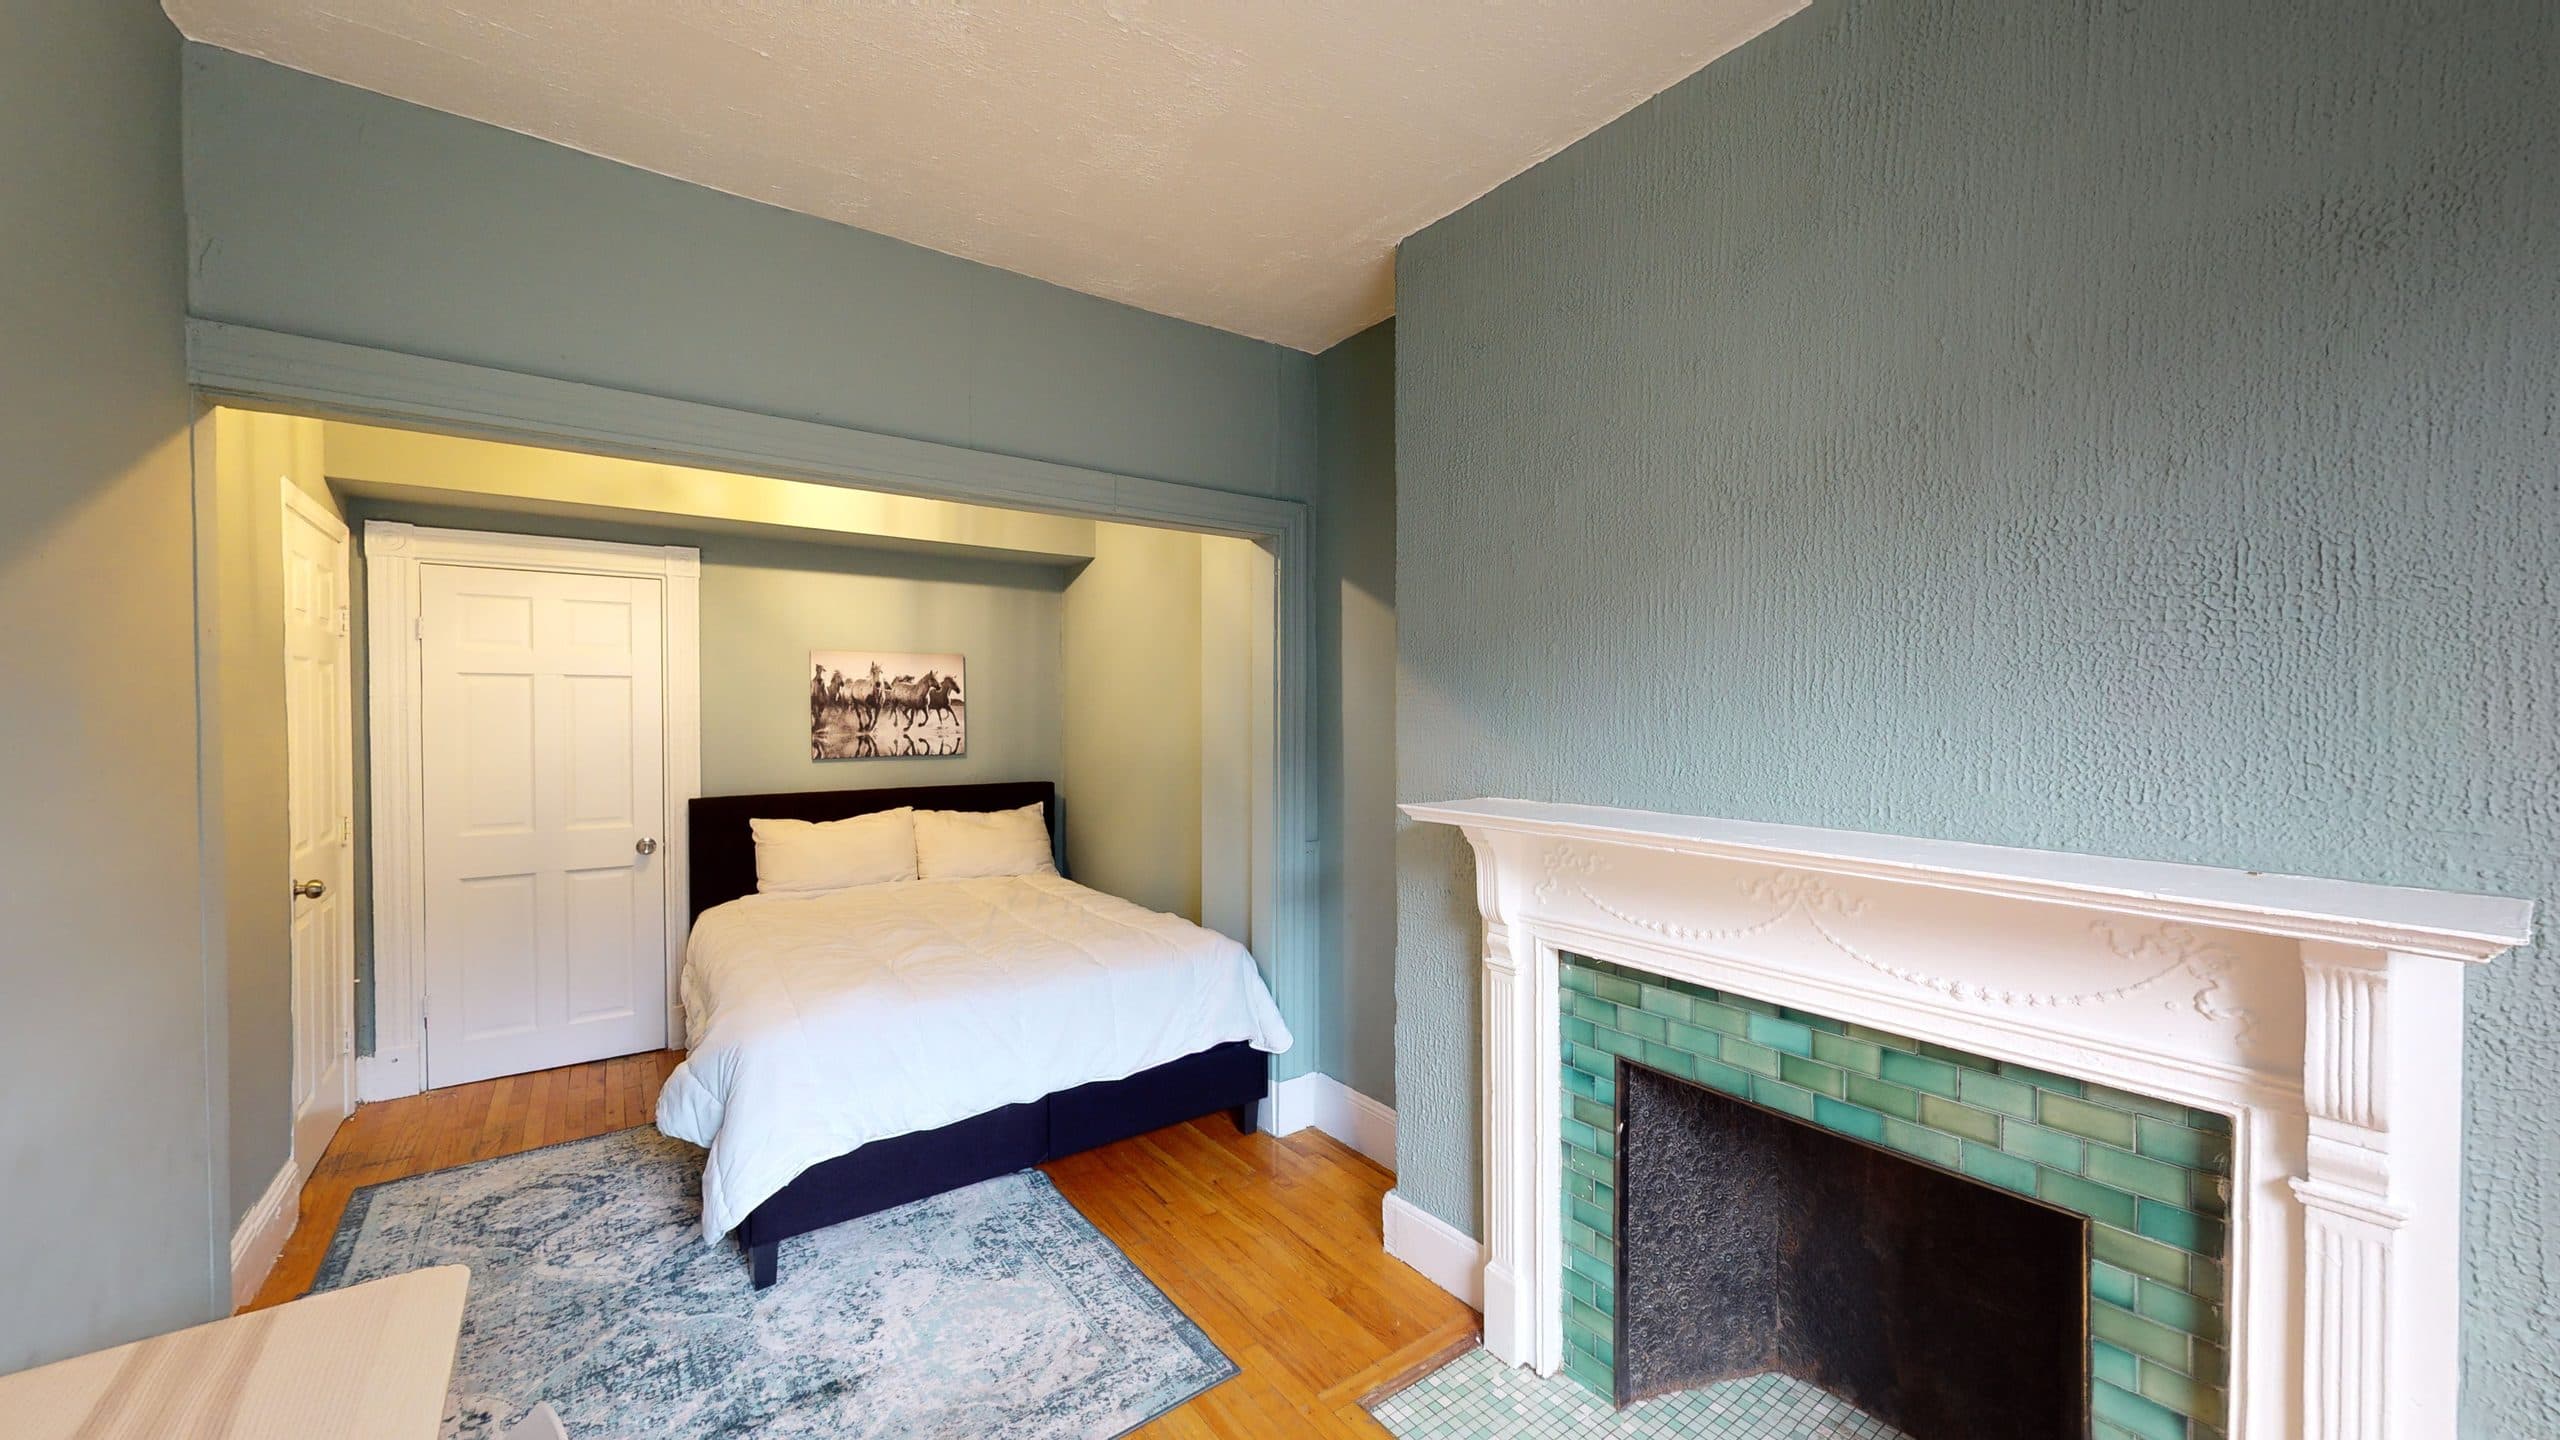 Photo 17 of #1237: Queen Bedroom D at June Homes